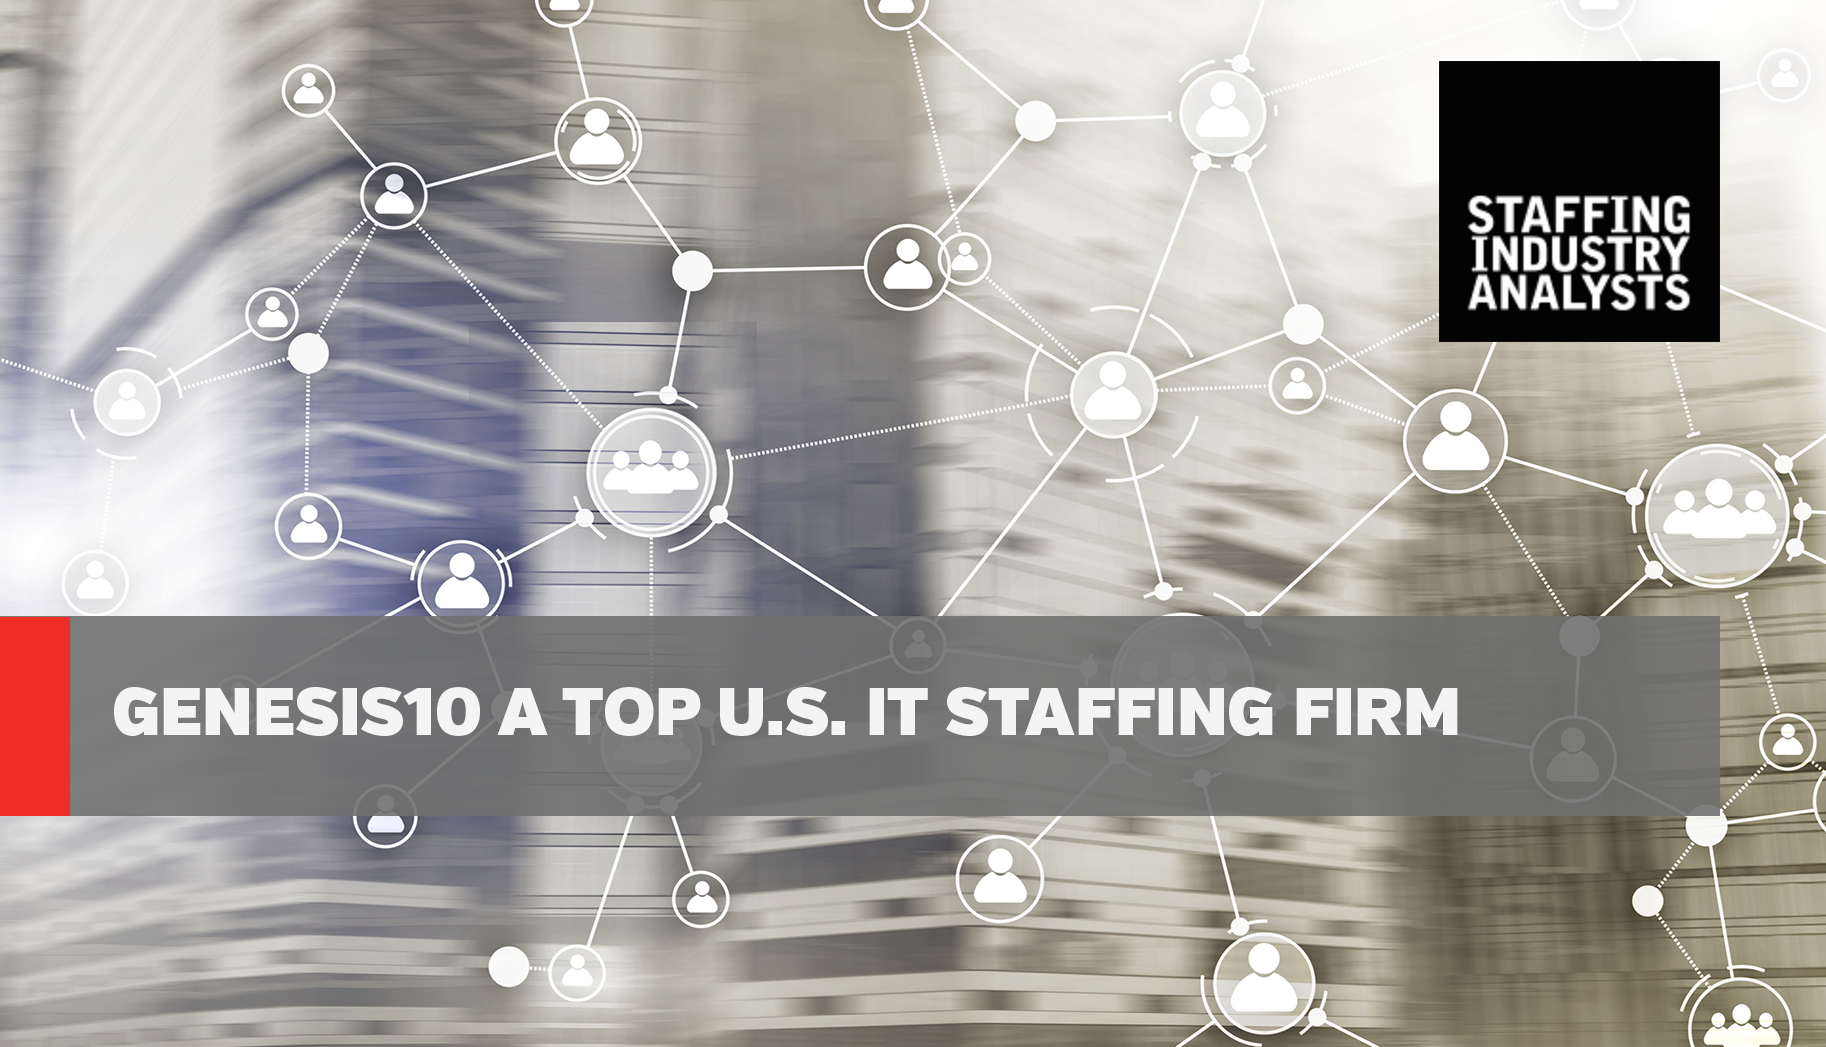 LinkedIn SIA Genesis10 a Top U.S. IT Staffing Firm